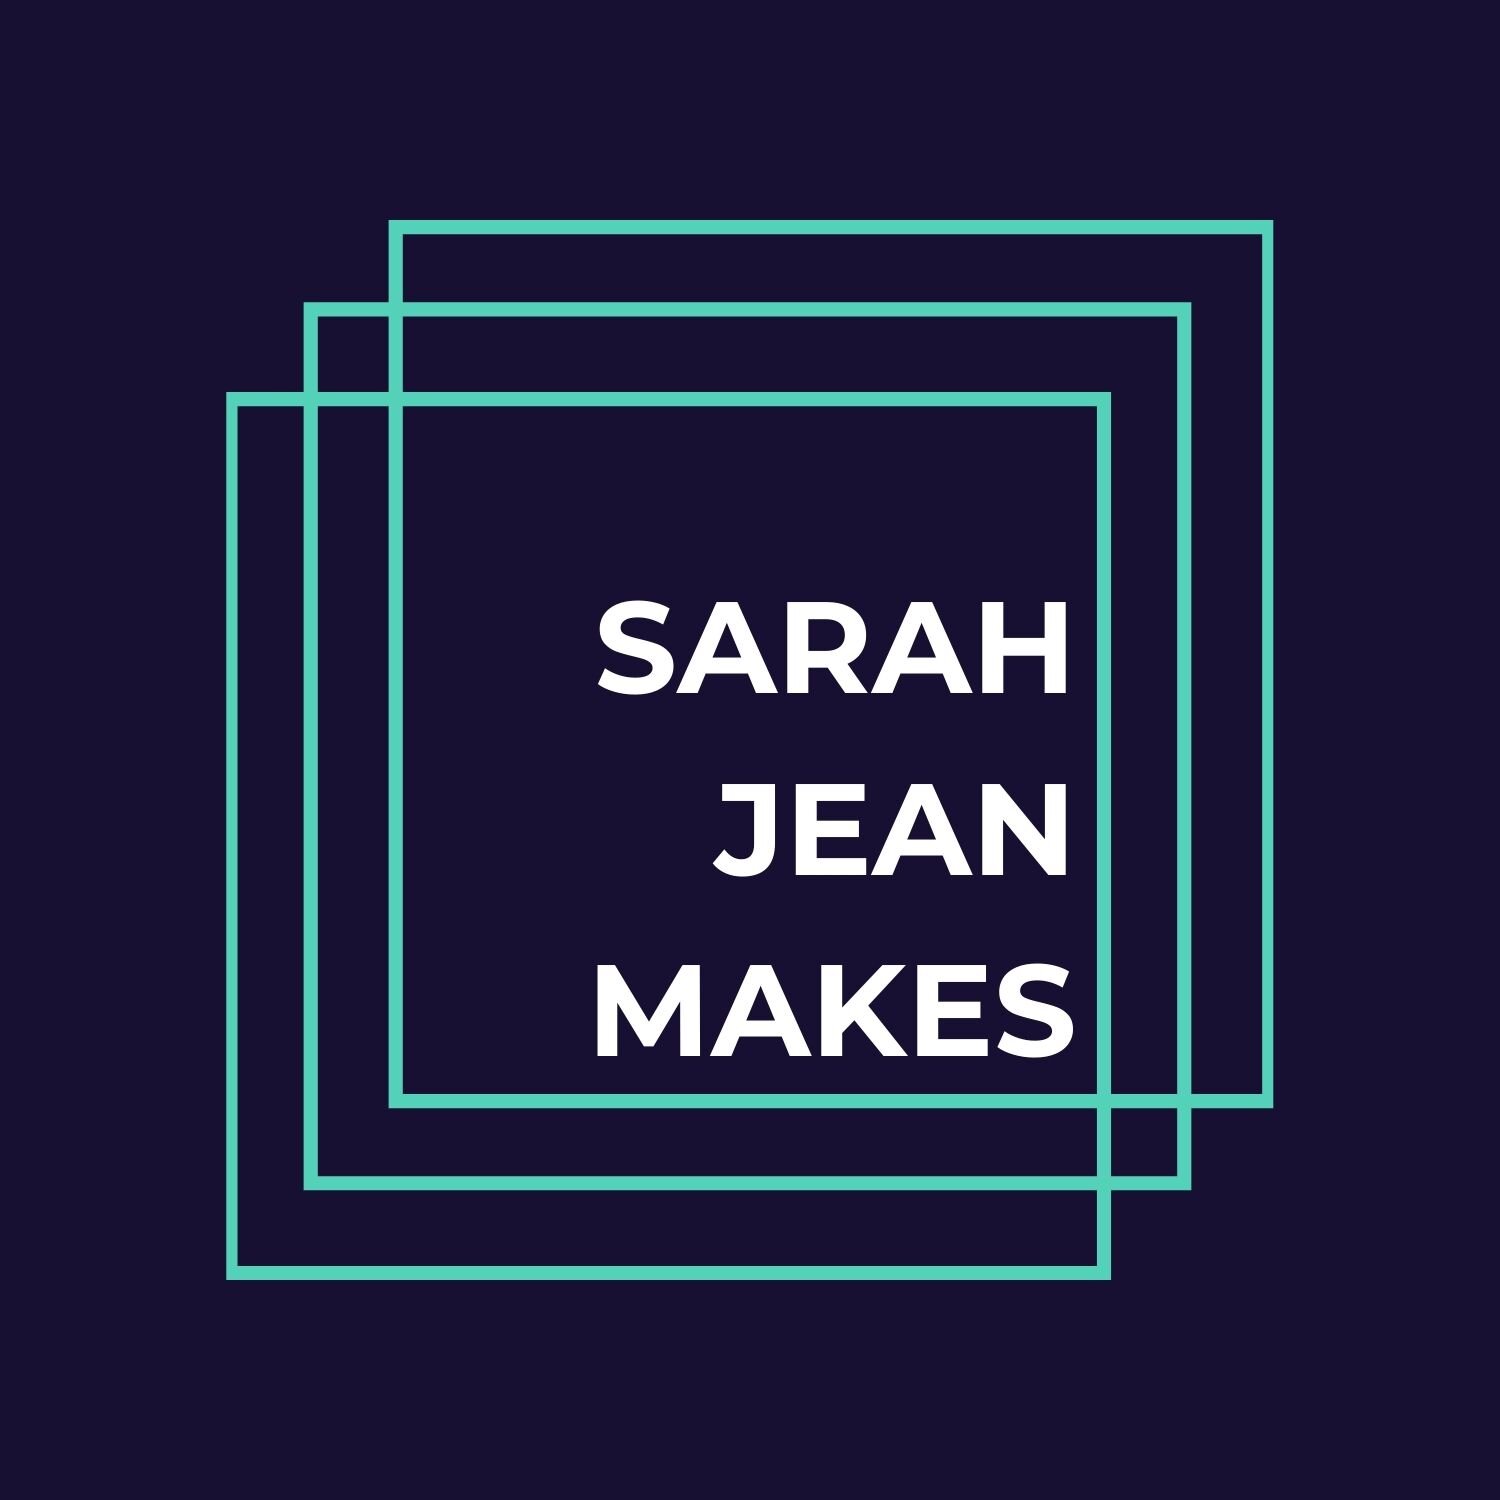 Sarah Jean Makes